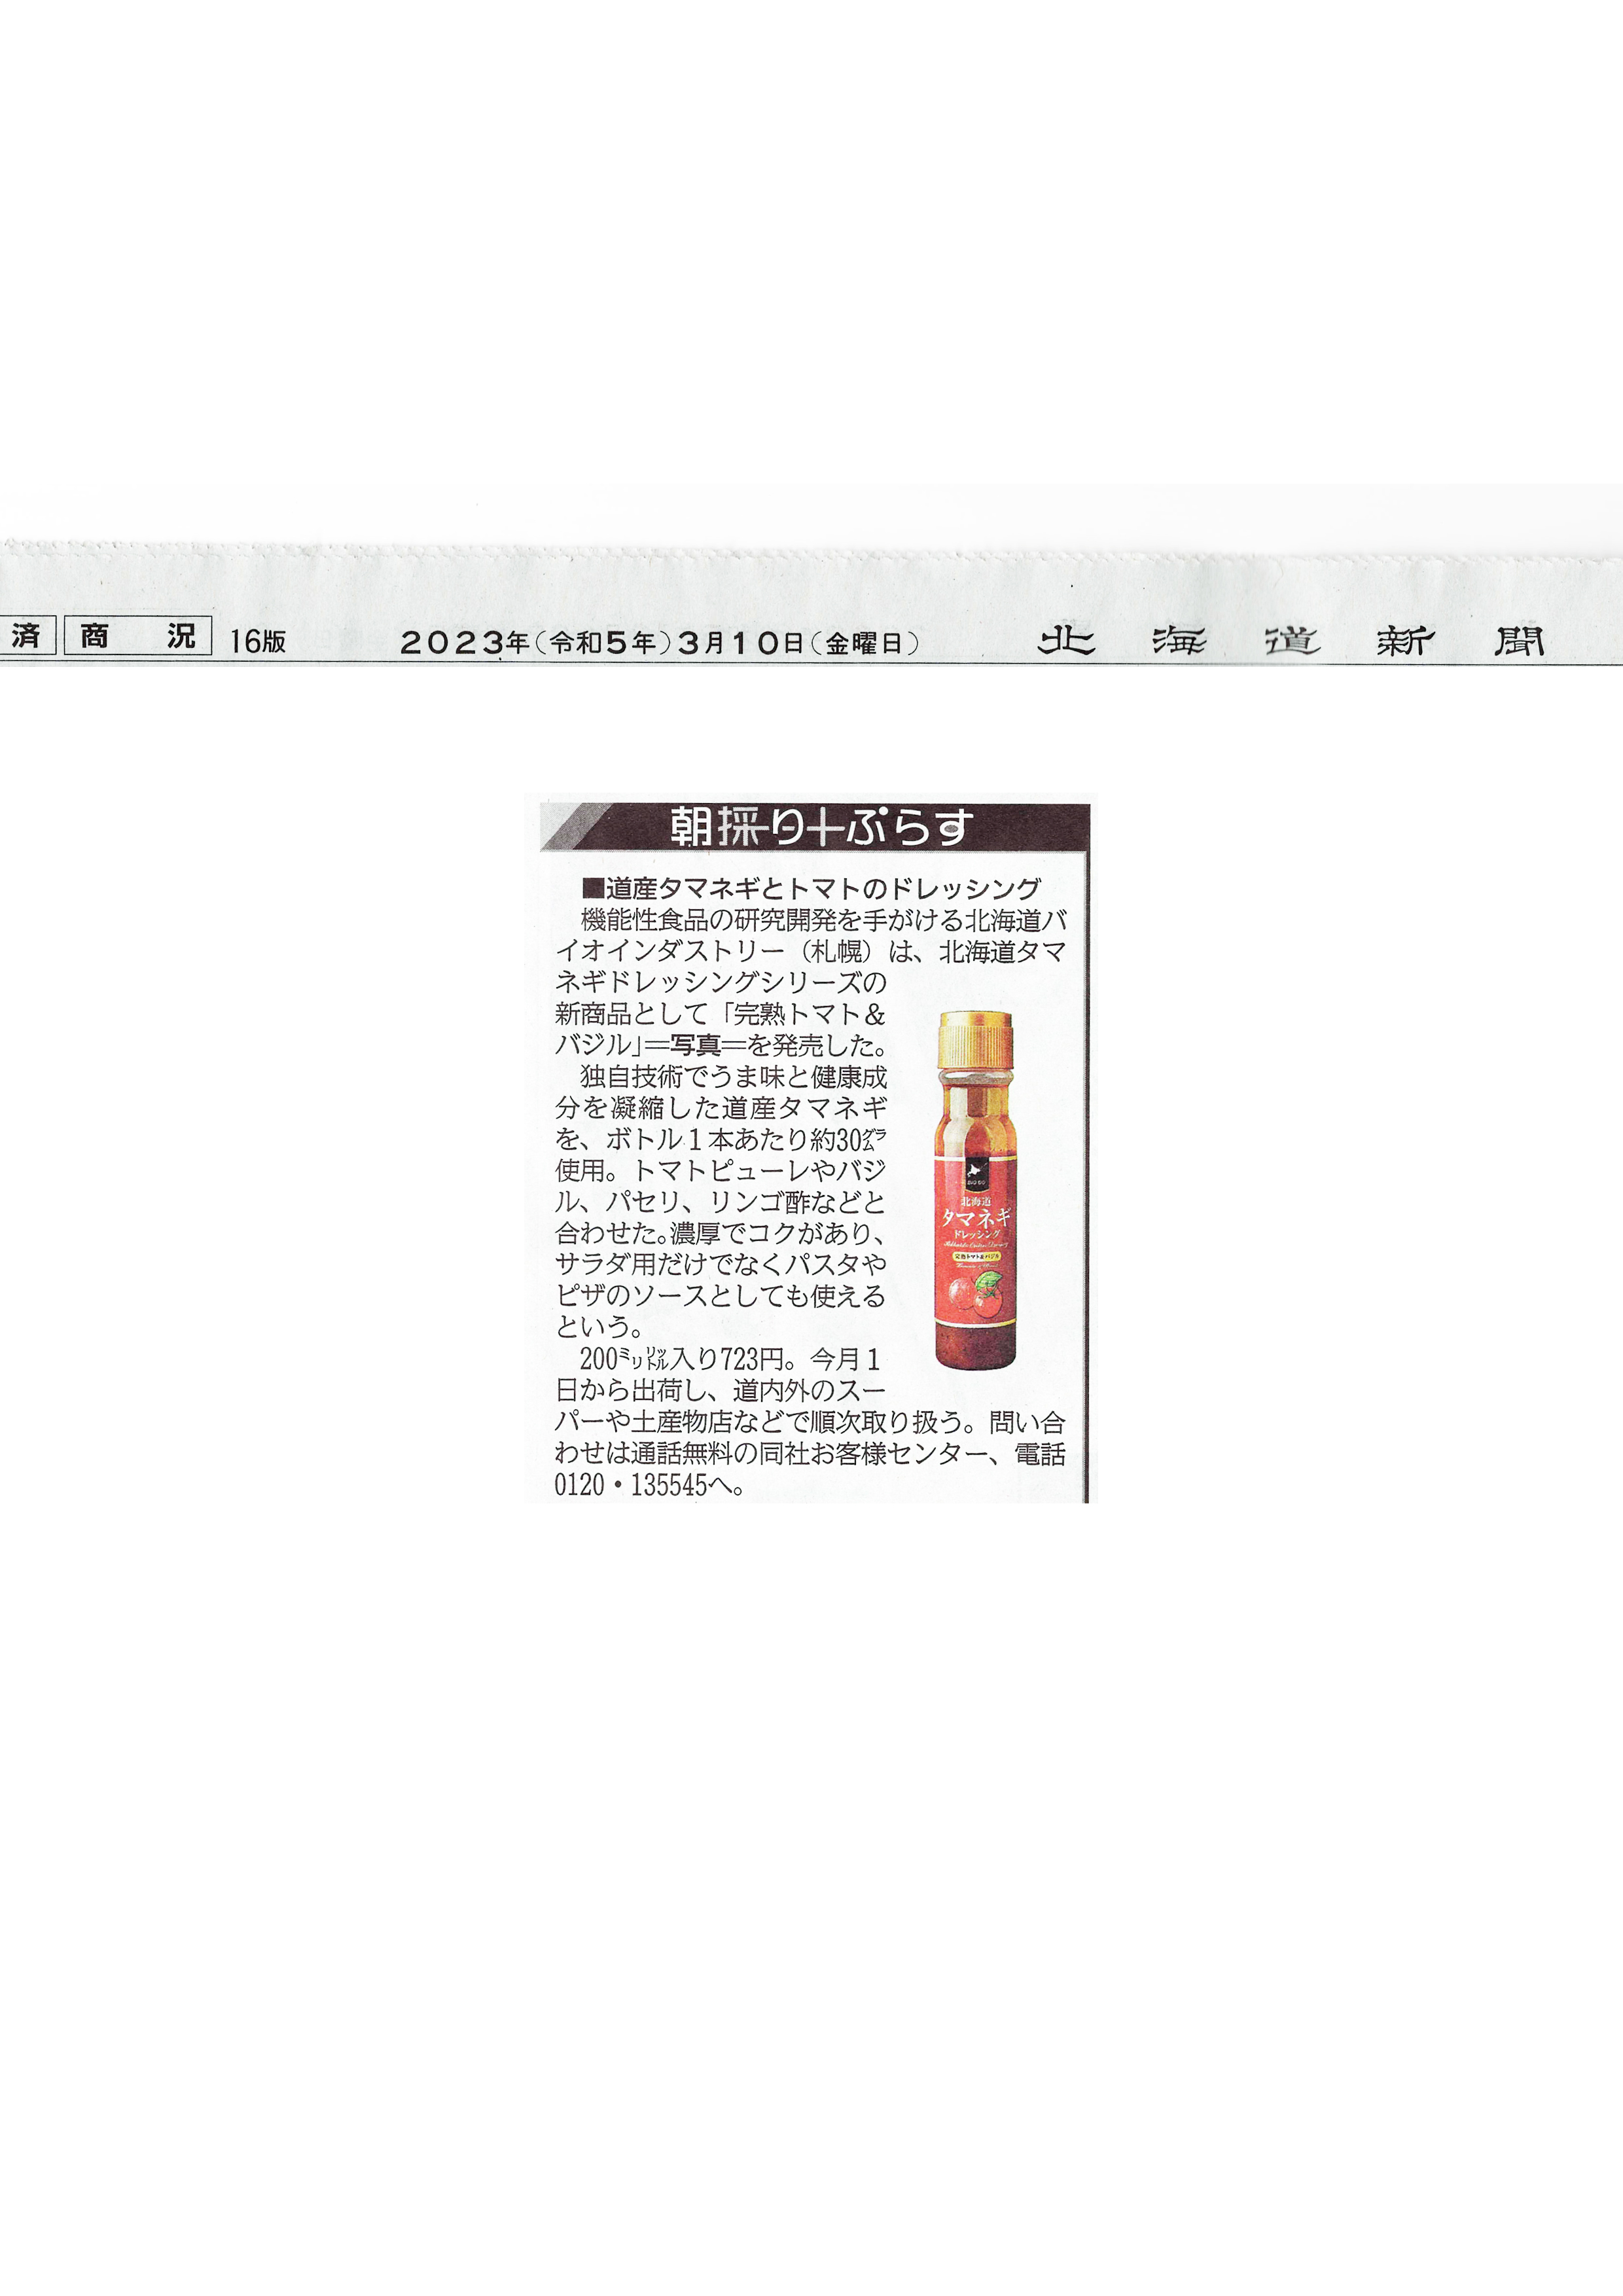 北海道新聞の「朝採りぷらす」で紹介されました